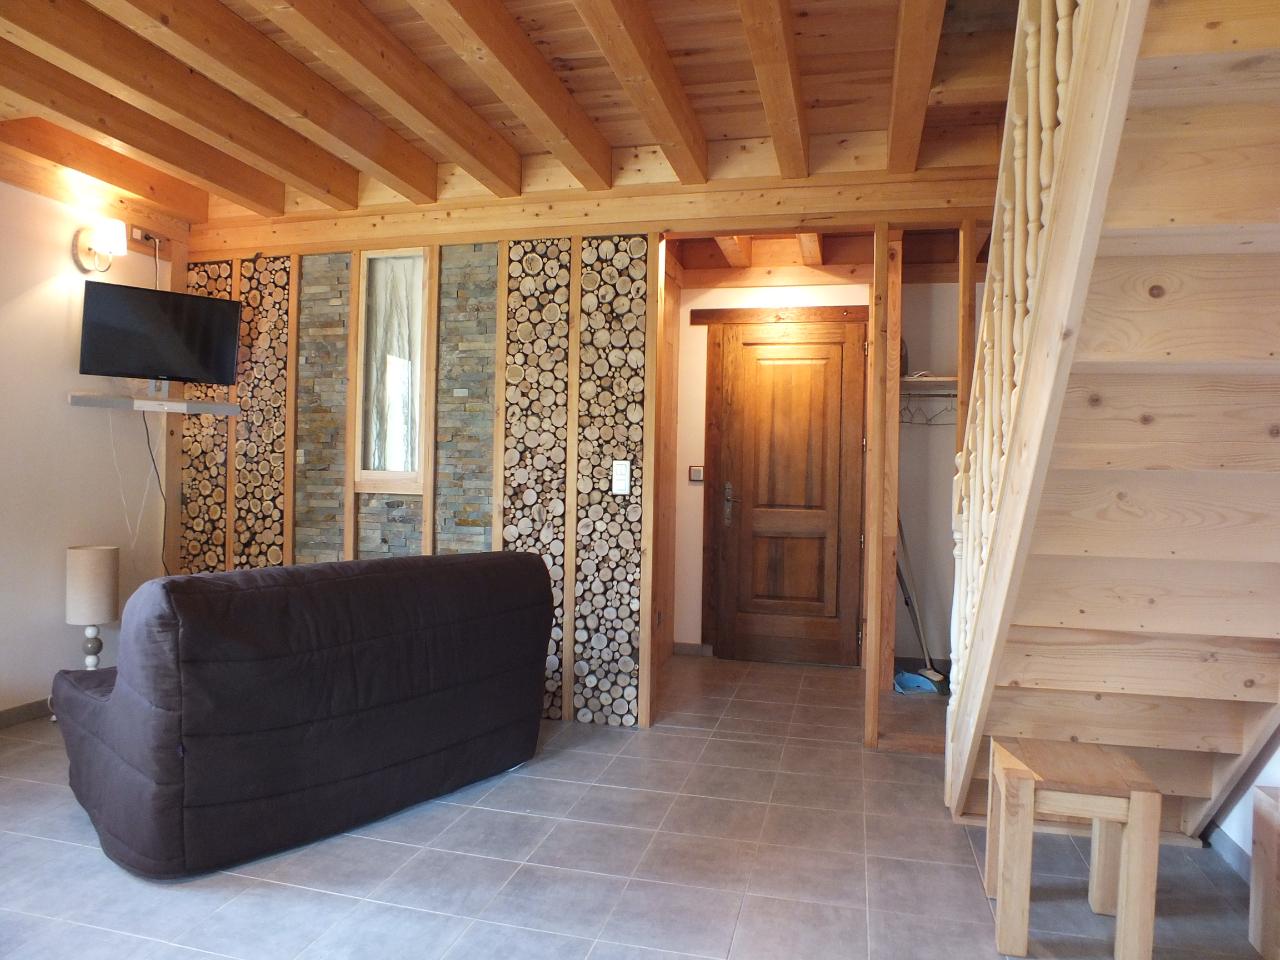 Hôte GreenGo: La Maison AuBoisDebout - Spa - Sauna - Plaisir d'accueillir - Image 2